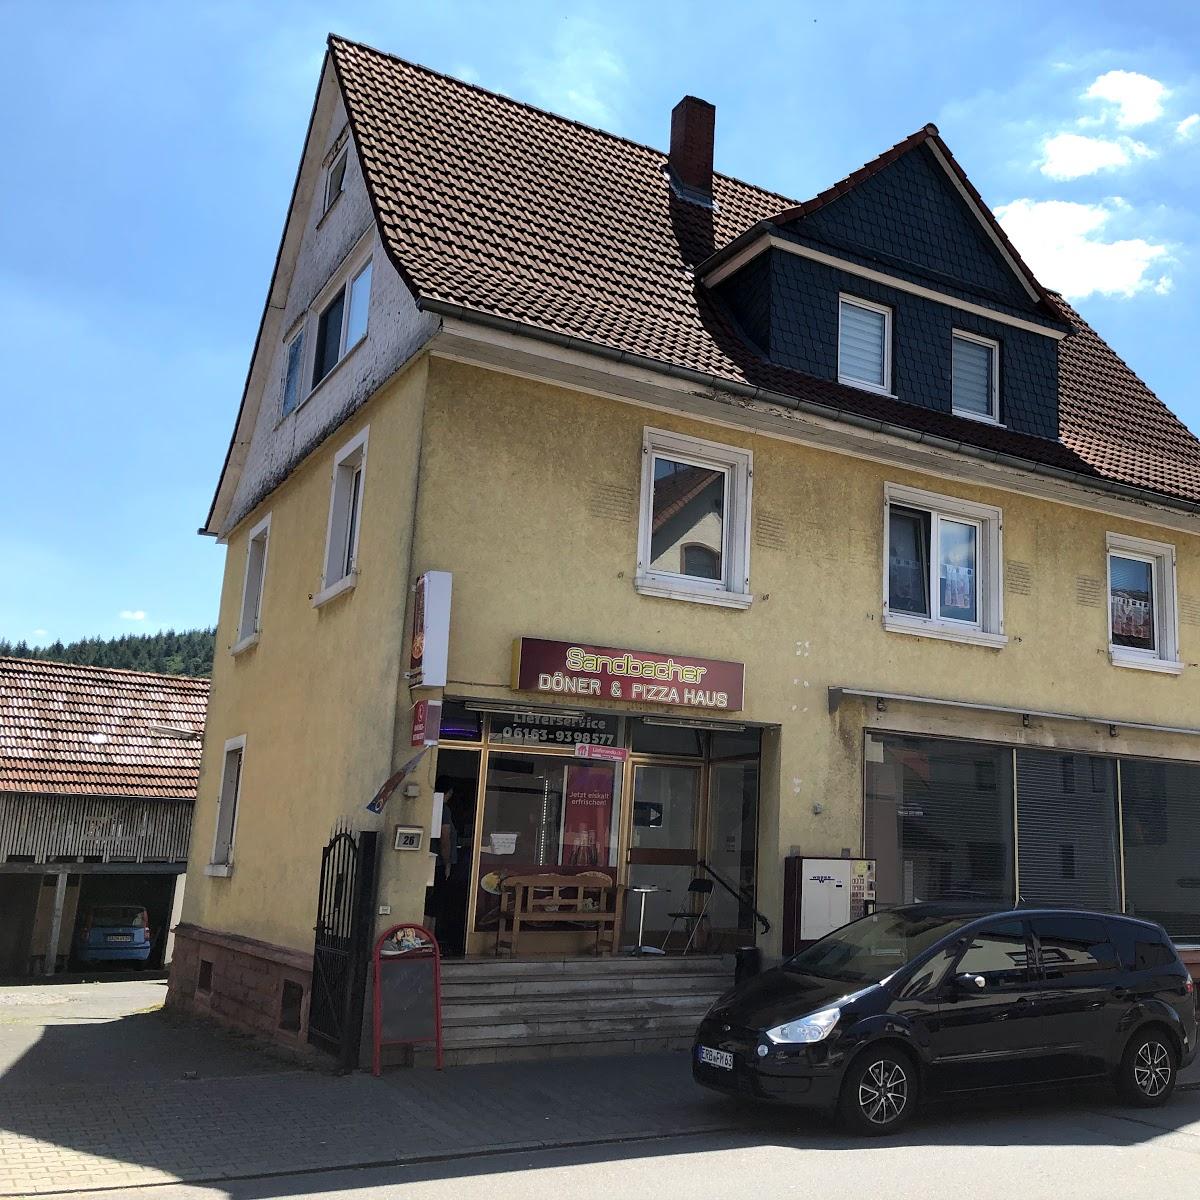 Restaurant "Ristorante Acquario" in  Odenwald